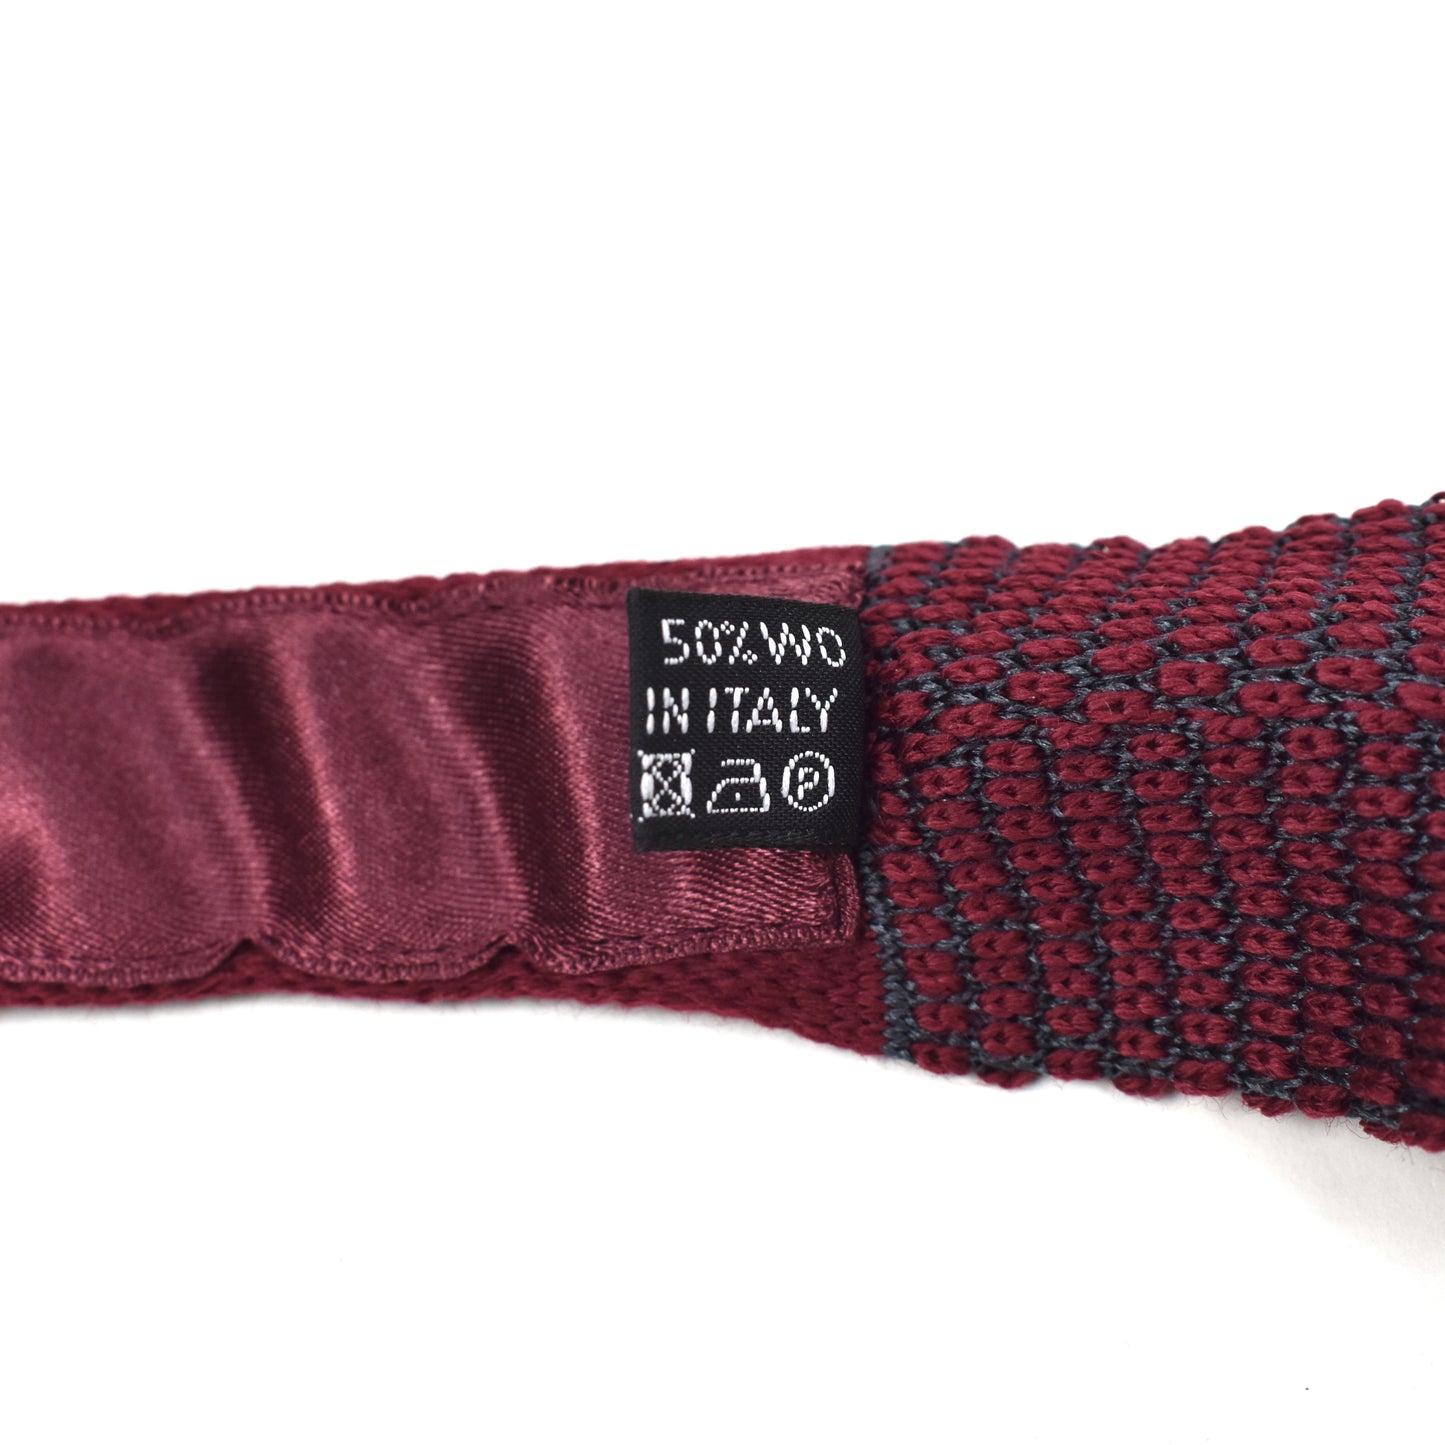 Brioni - Bordeaux Wool/Silk Knit Tie